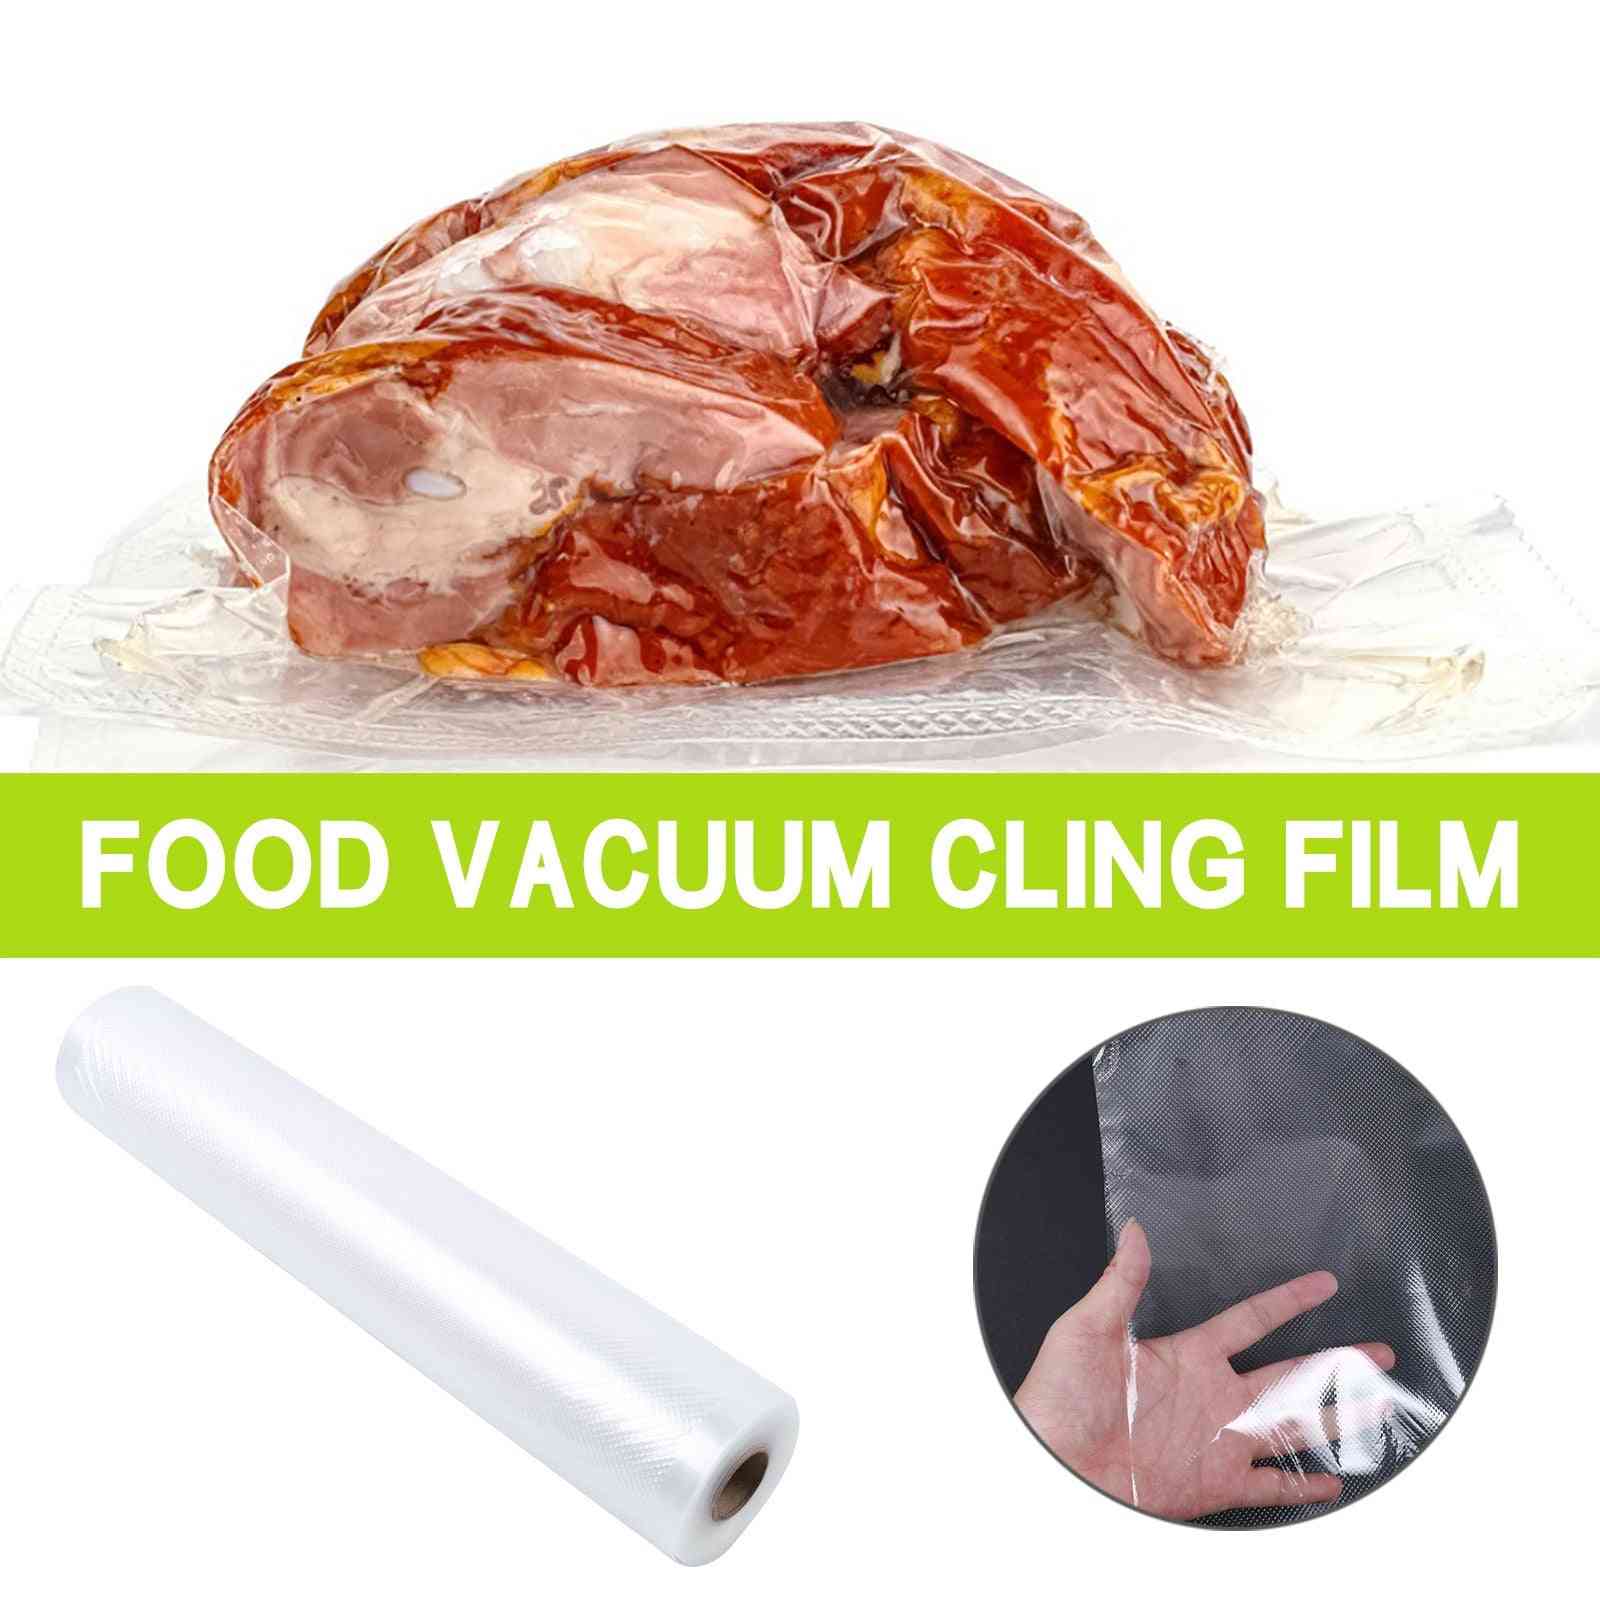 Vacuüm compressiefilm voor het verpakken van voedsel